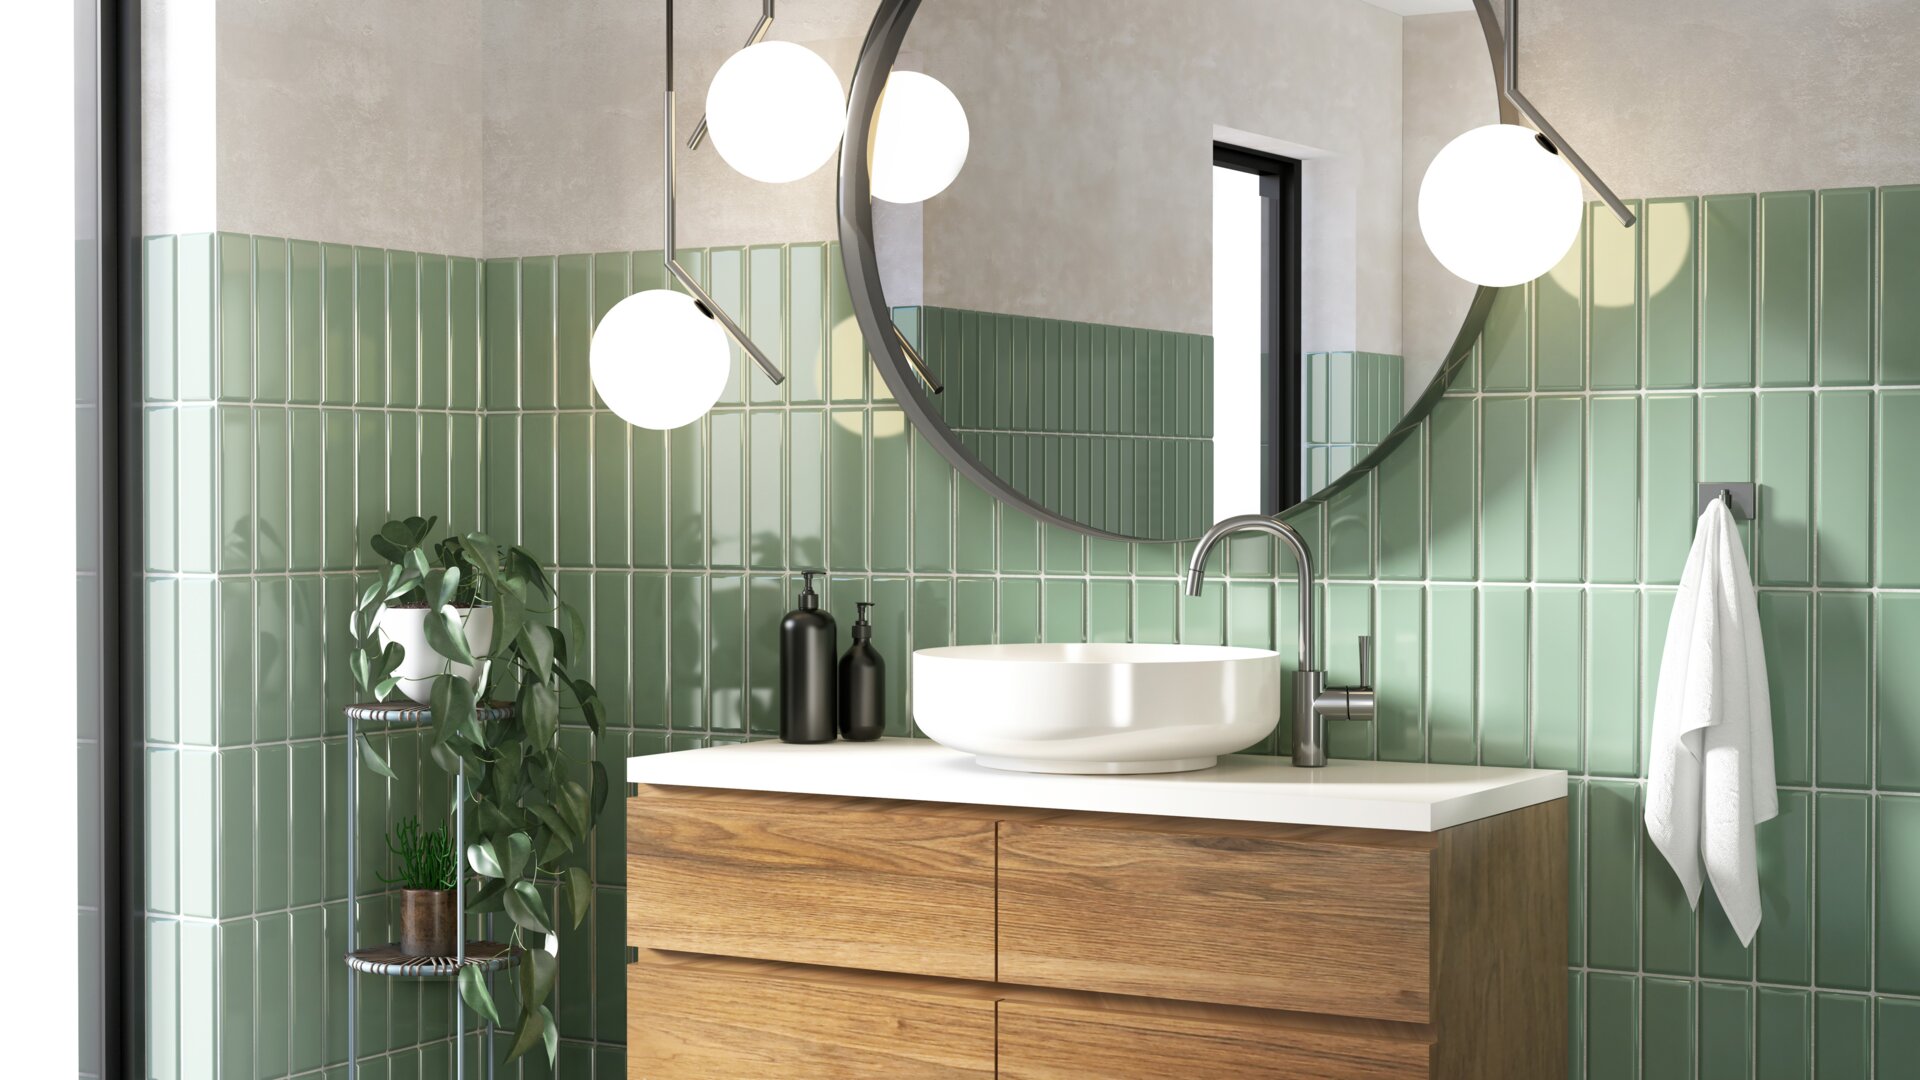 Bagno moderno con piastrelle verdi, grande specchio rotondo e mobile con frontale in legno.